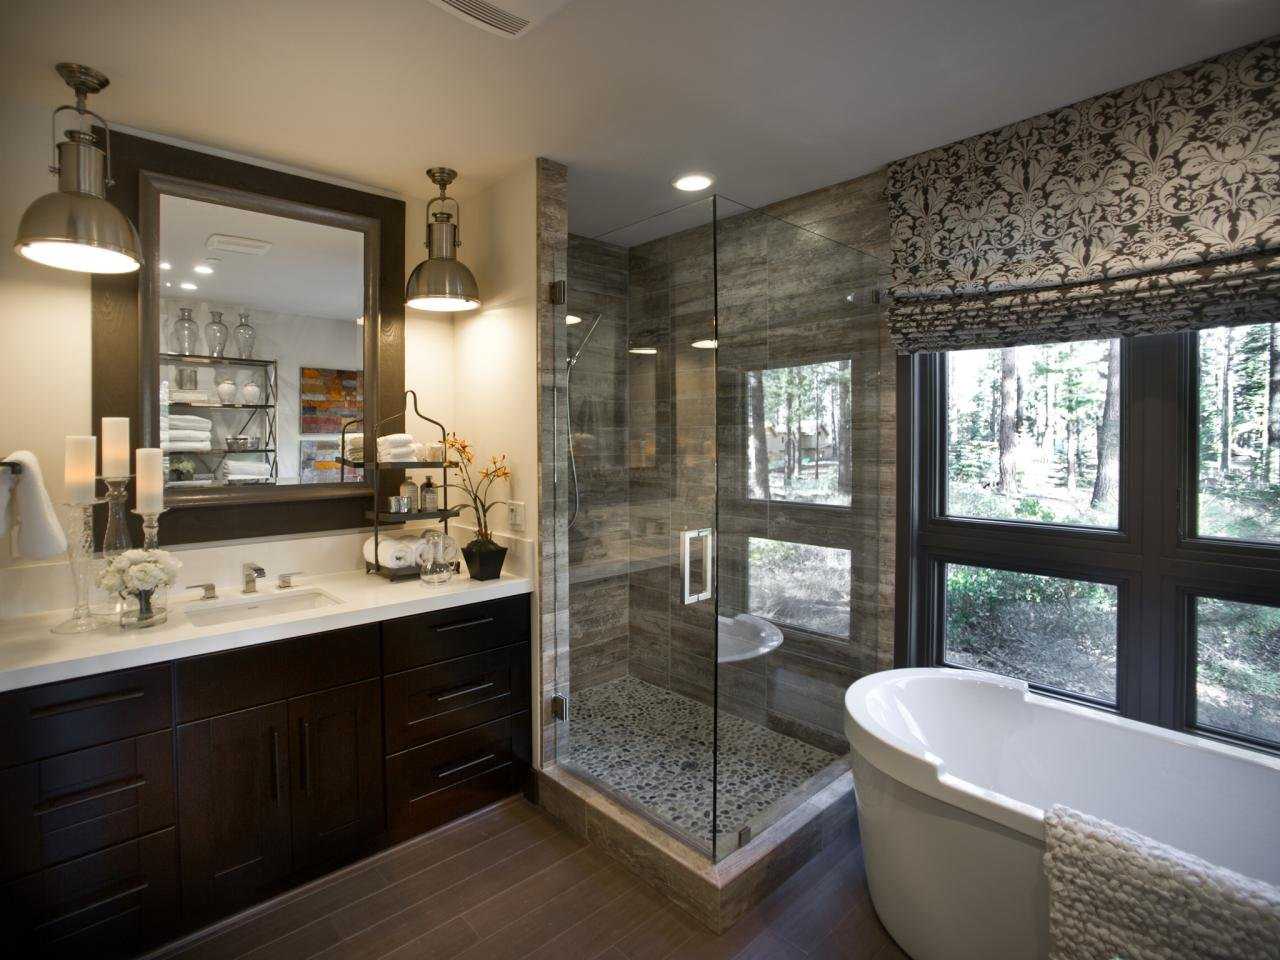 Окно в ванной комнате — особенности и варианты